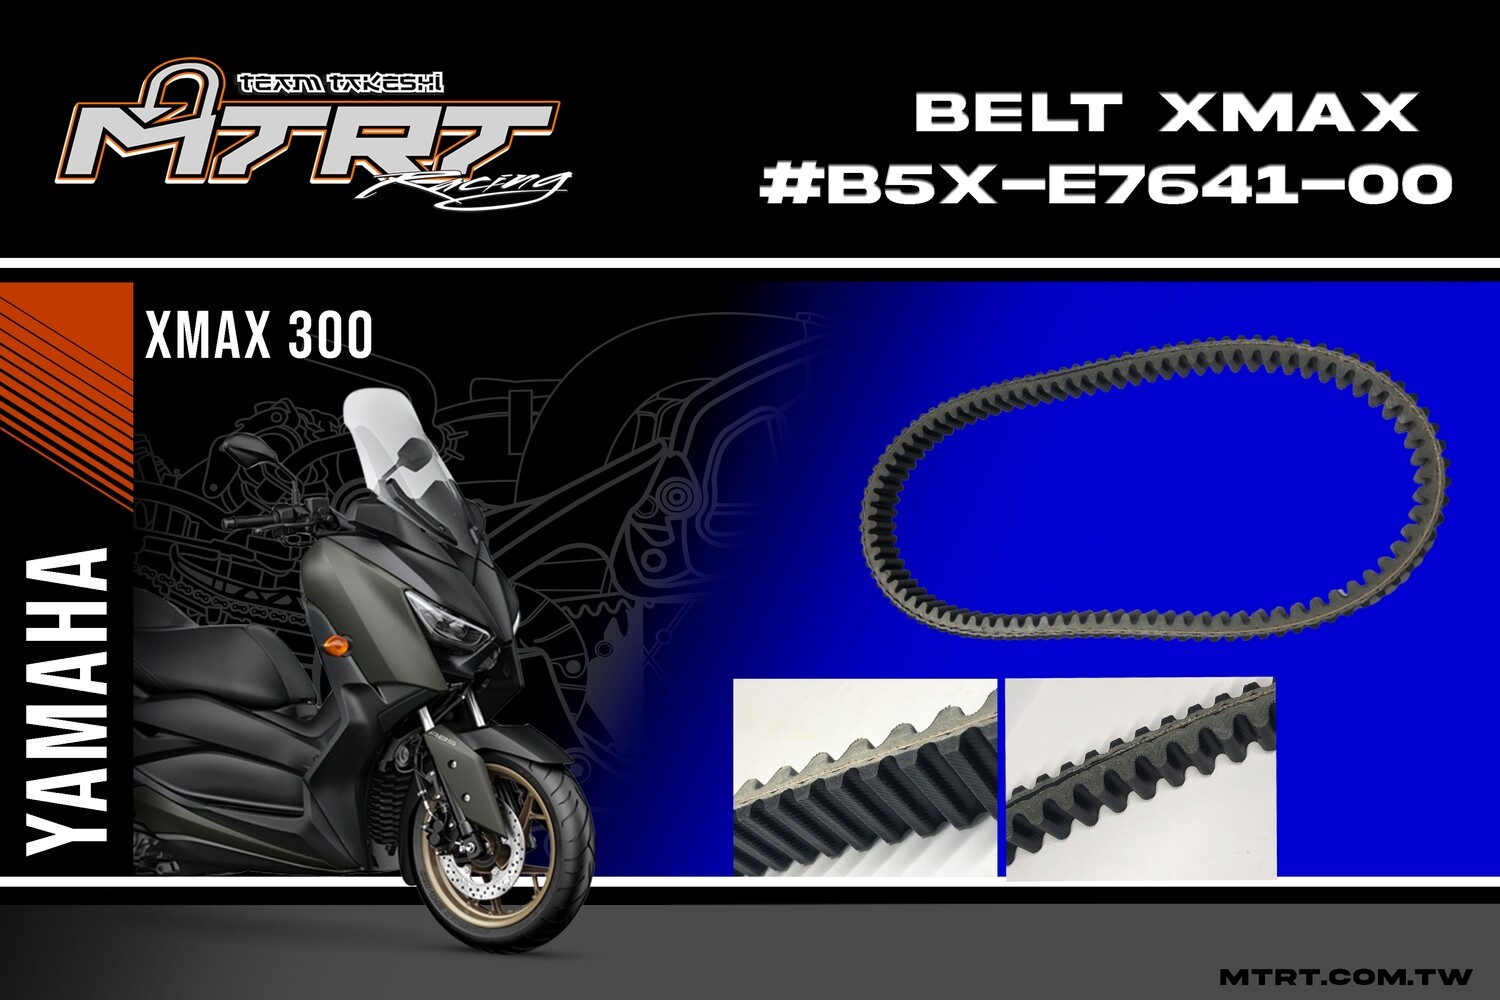 BELT XMAX #B5X-E7641-00